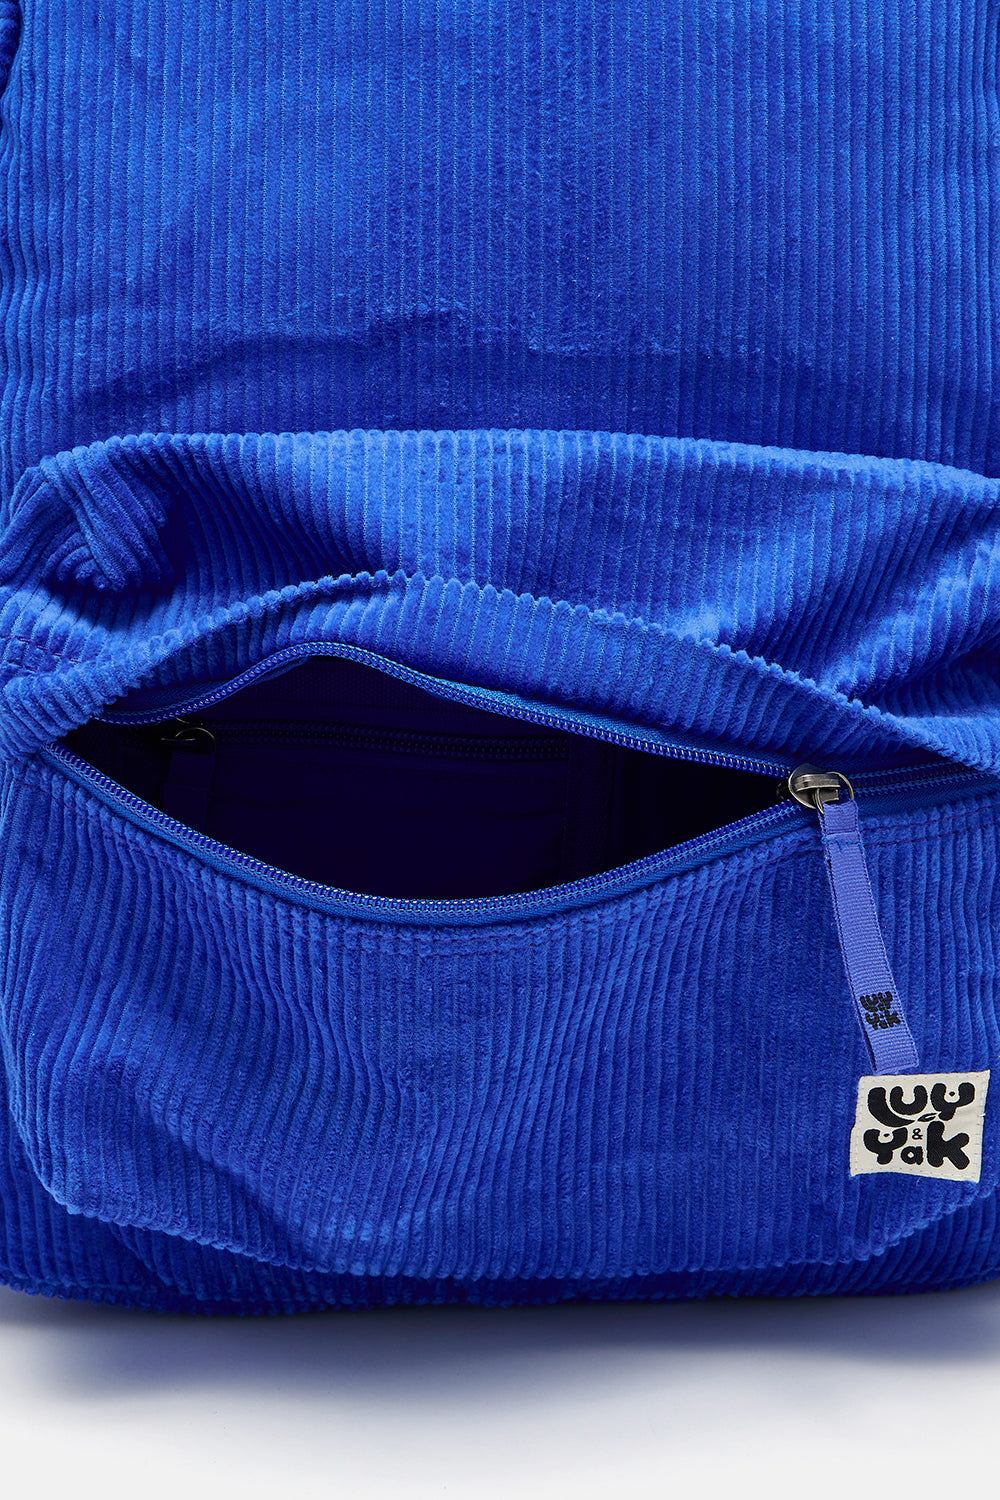 Kellie Backpack: ORGANIC CORDUROY - Cobalt Blue